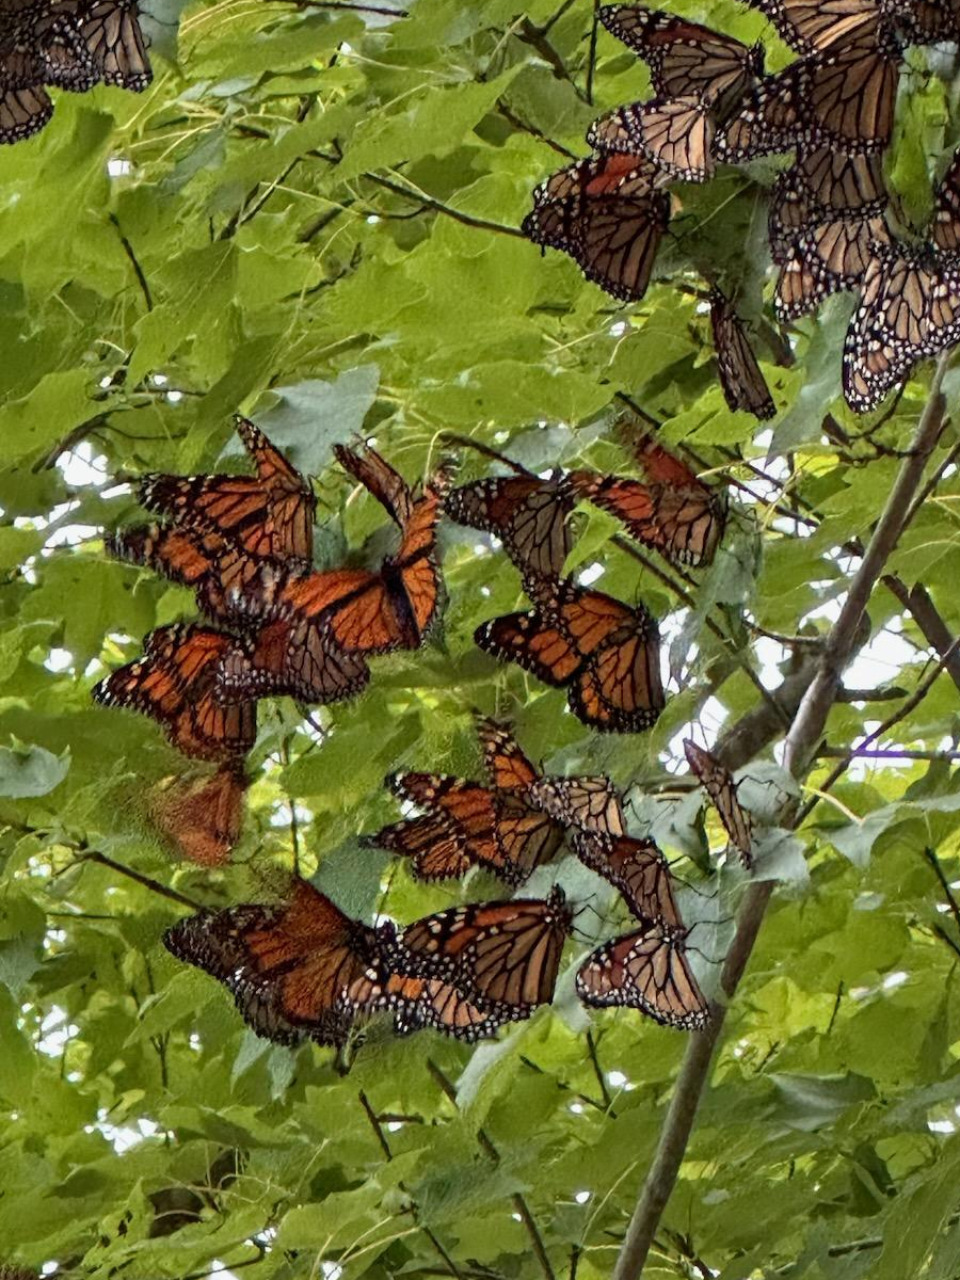 monarchs roosting in trees